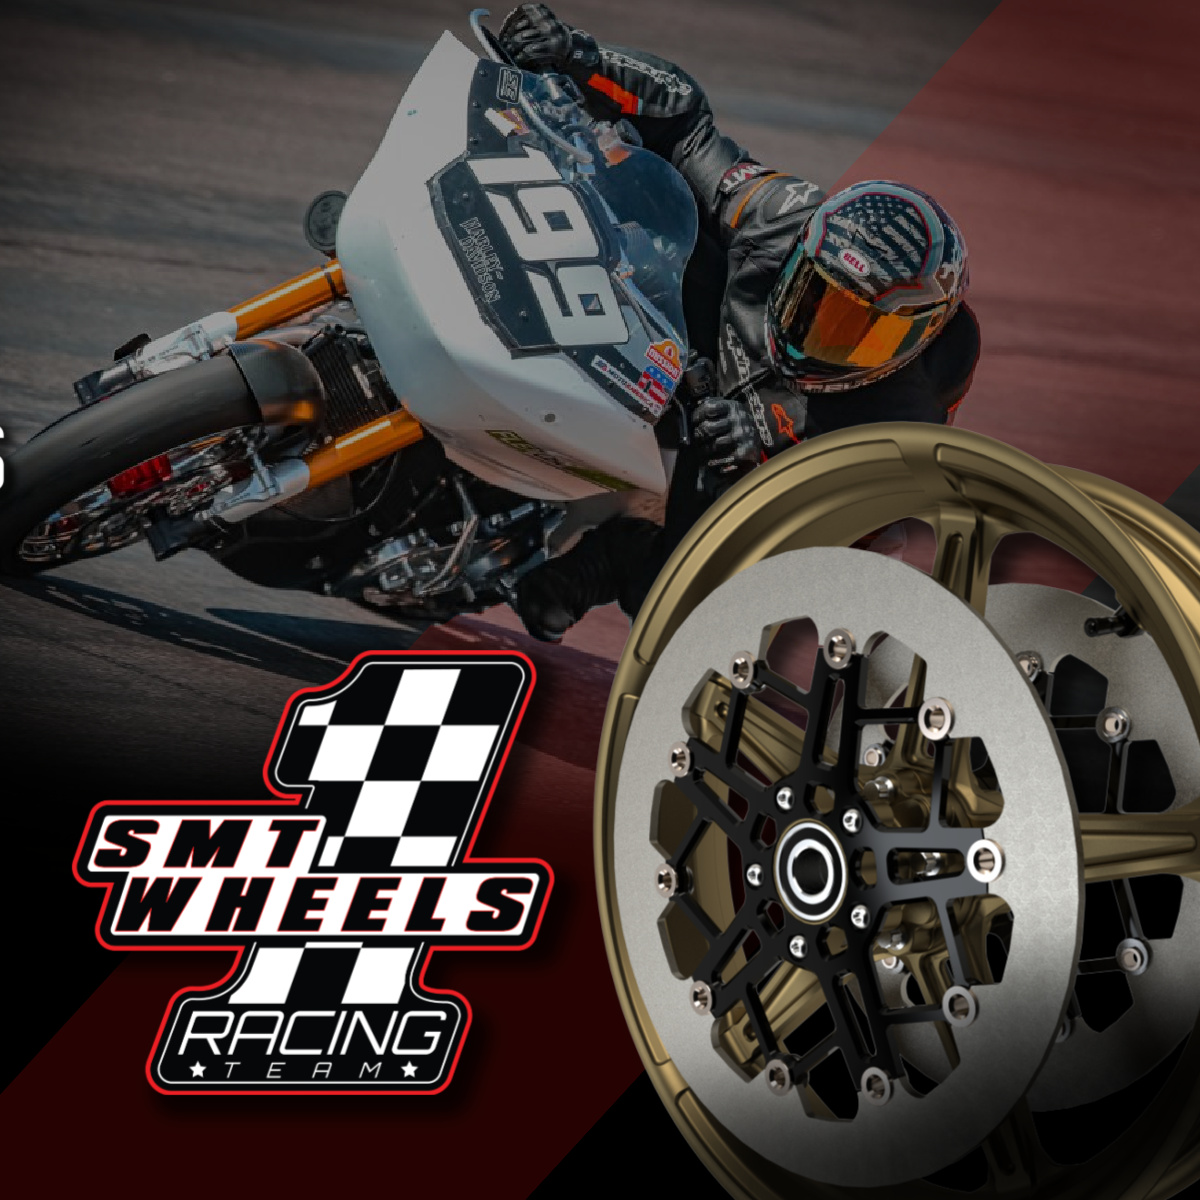 SMT wheels #1 racing team